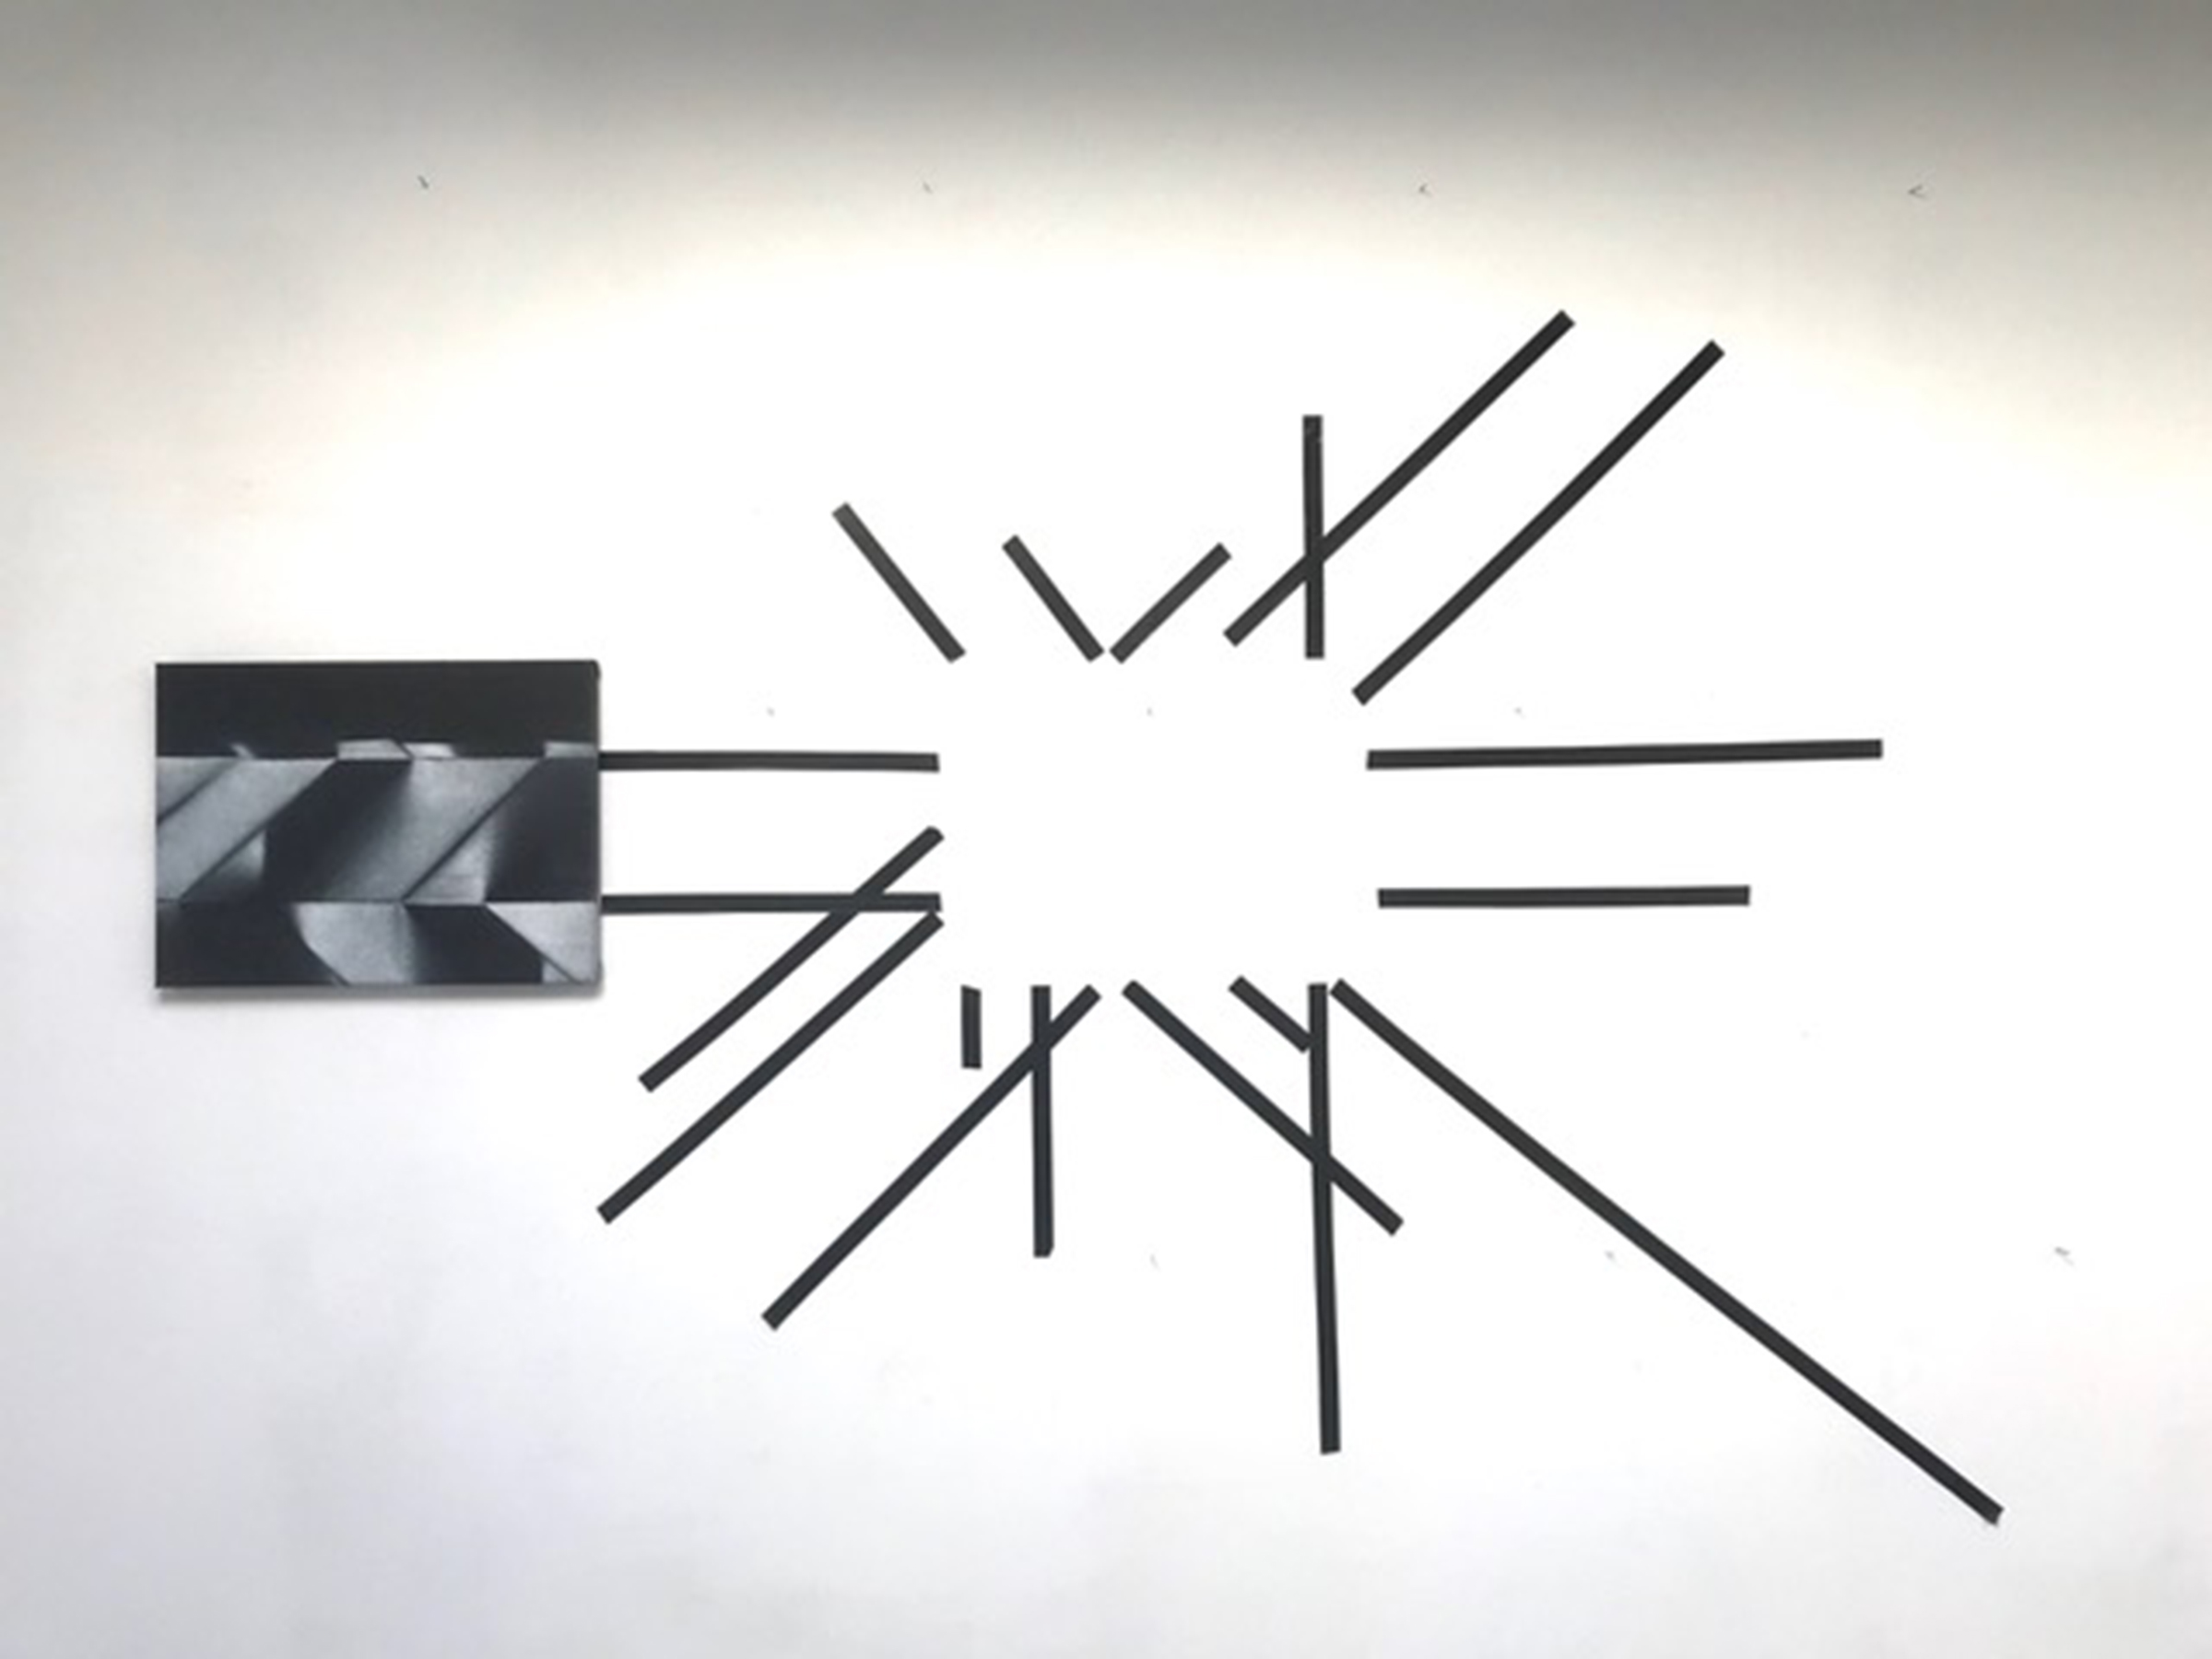 zwarte lijnen op de muur creeren een wit rechthoekig vlak in het midden, uiterst links hangt een schilderij met geometrische vormen